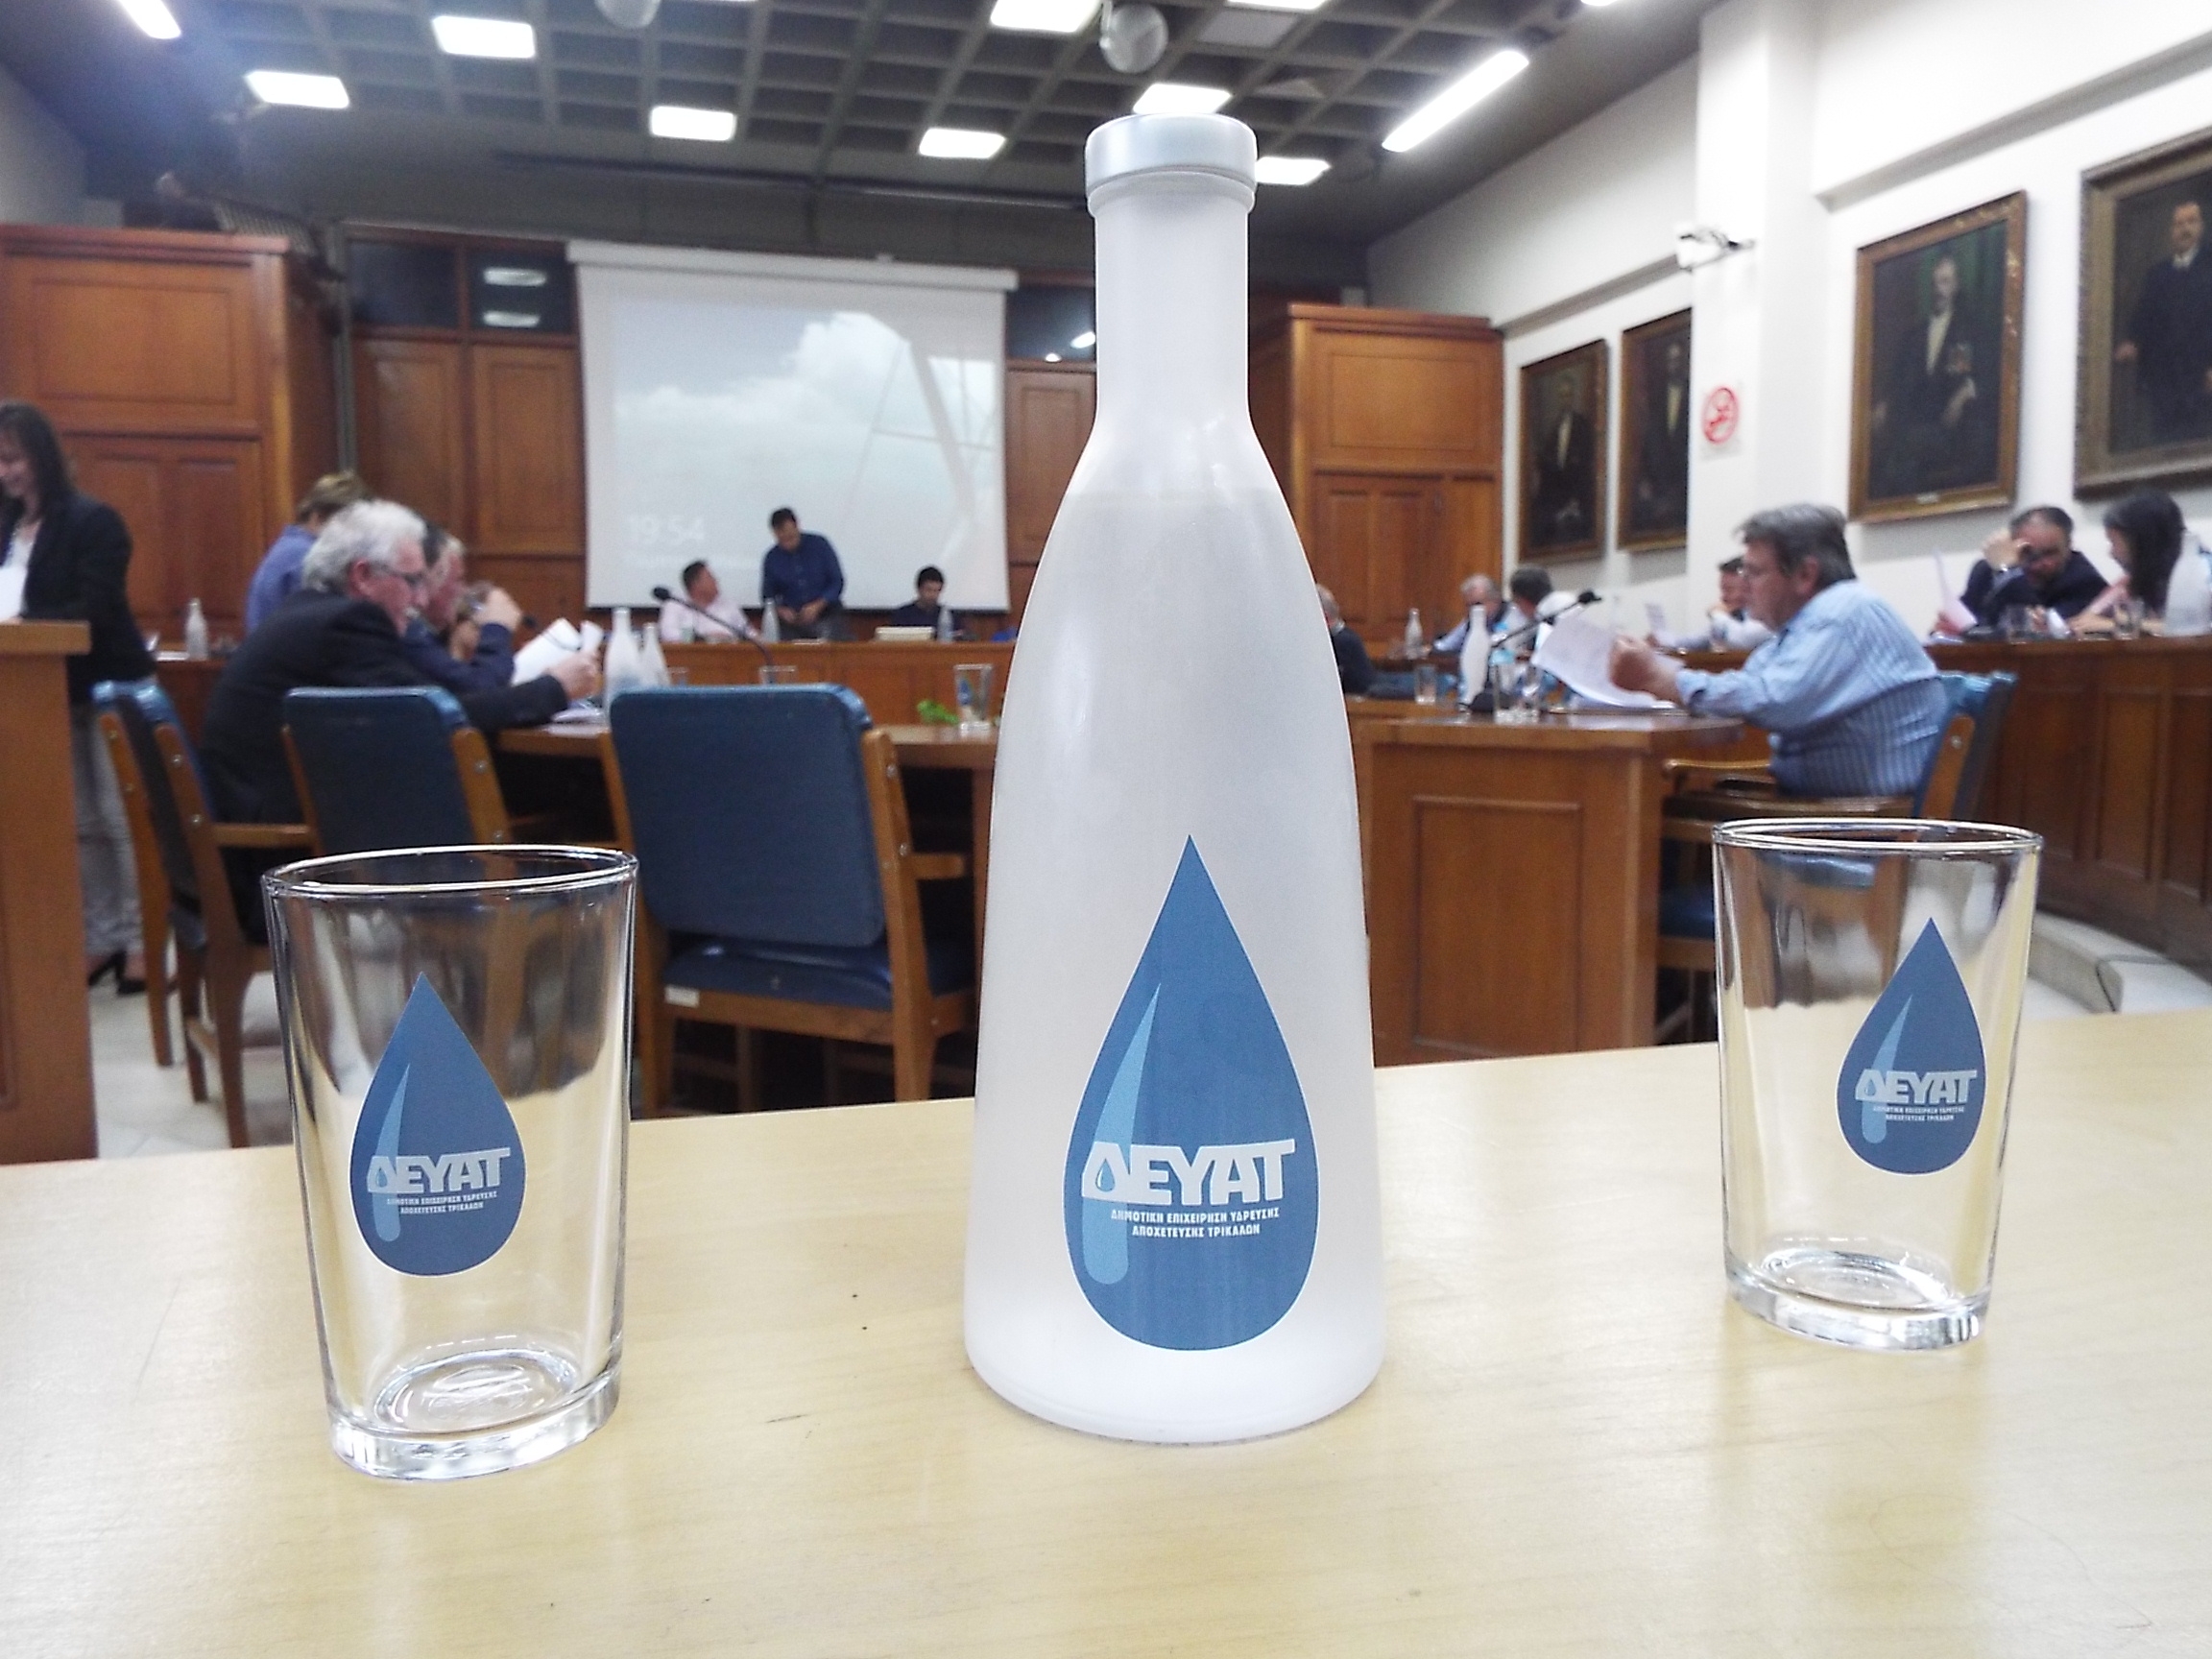 Σε ψύκτες και μπουκάλια το νερό της ΔΕΥΑΤ –Θα προσφέρεται σε δημοτικούς χώρους 